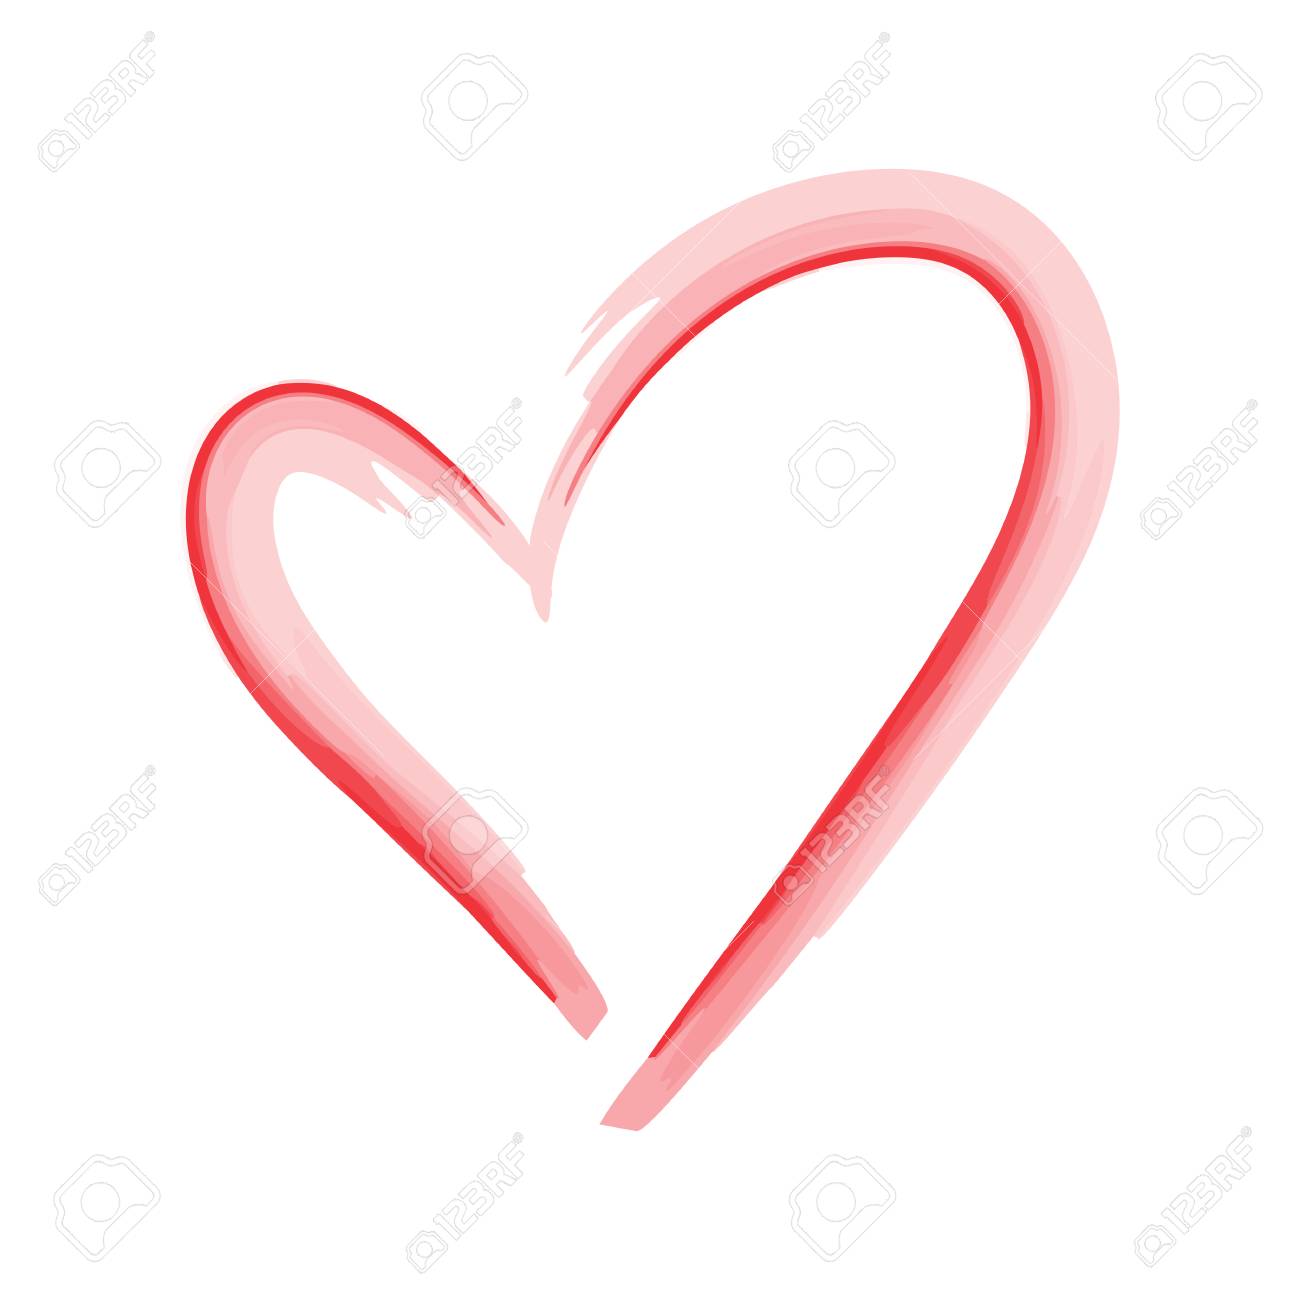 Love Symbols Free Download Clip Art